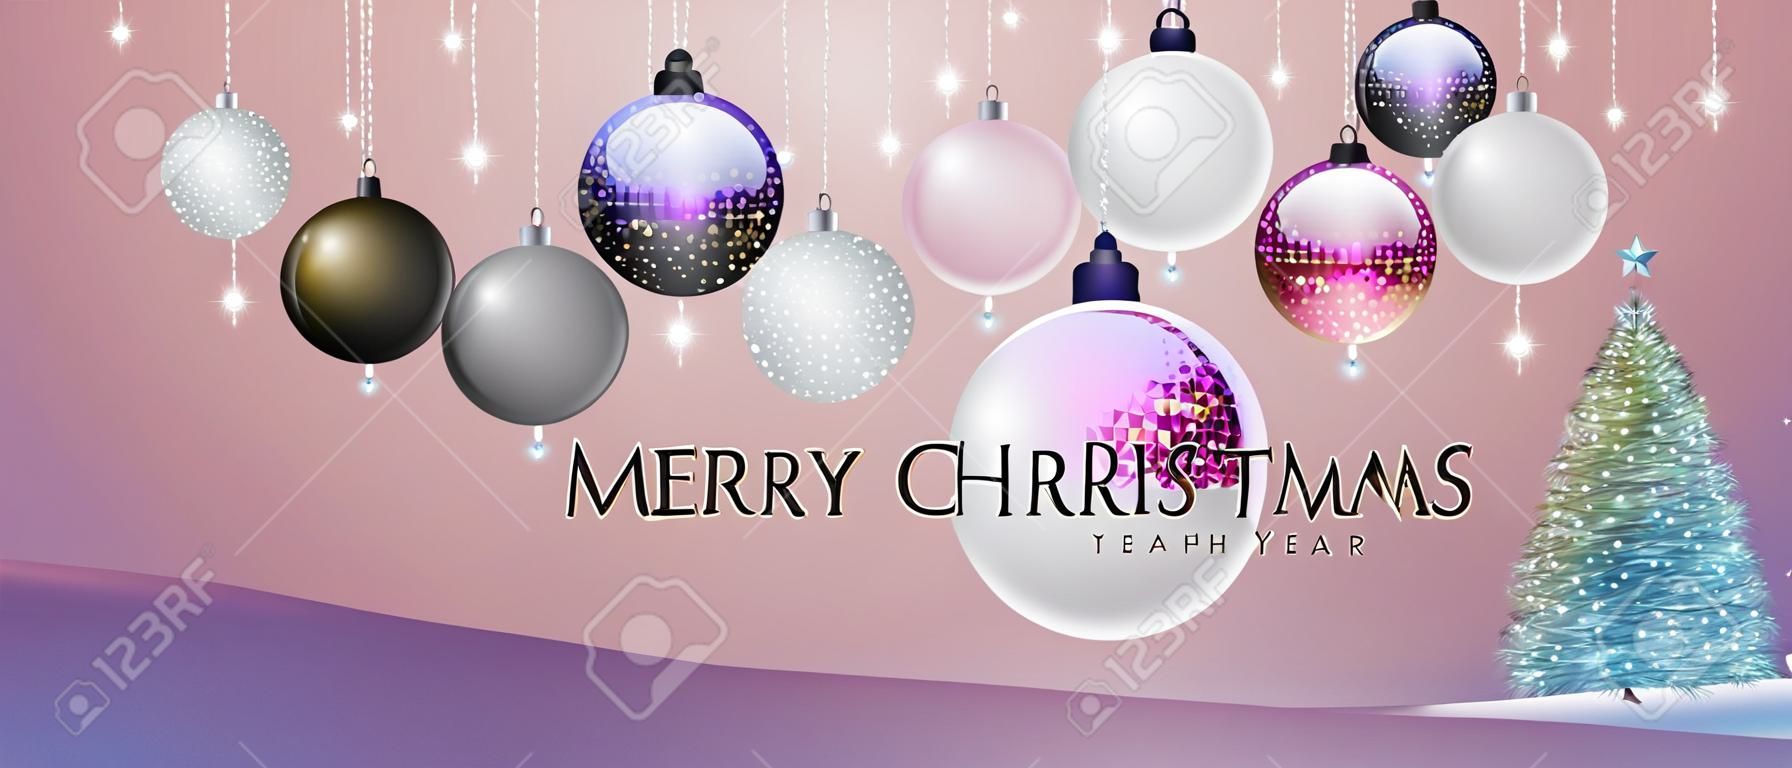 Wesołych świąt i szczęśliwego nowego roku plakat z dekoracjami świątecznymi. tło wakacje boże narodzenie. ilustracja wektorowa